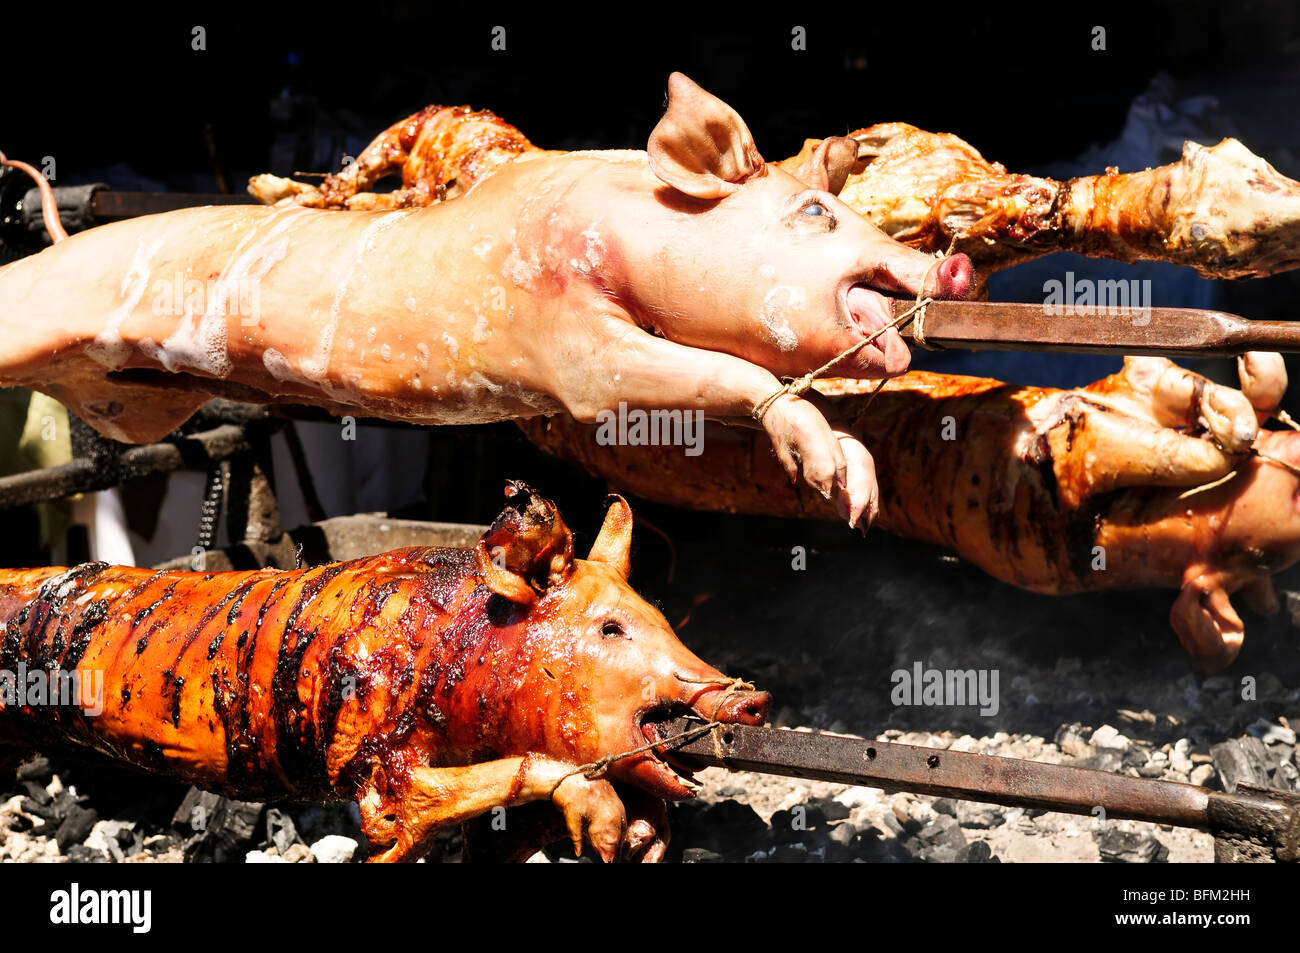 Les porcs rôti cuit sur des charbons ardents Banque D'Images